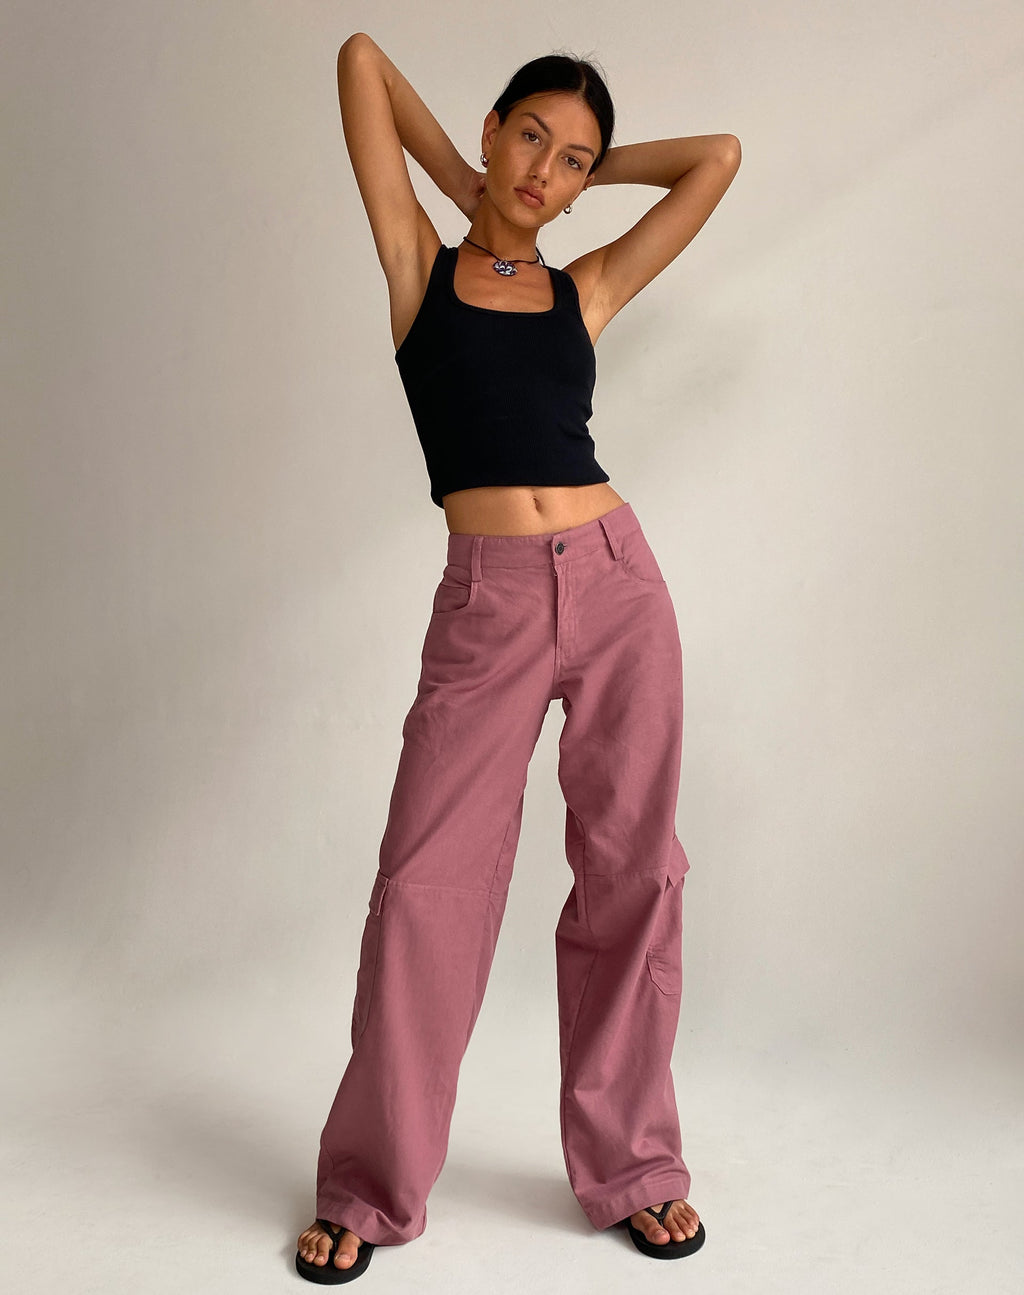 Gemma Low Rise Cargo Trouser in Mauve Linen